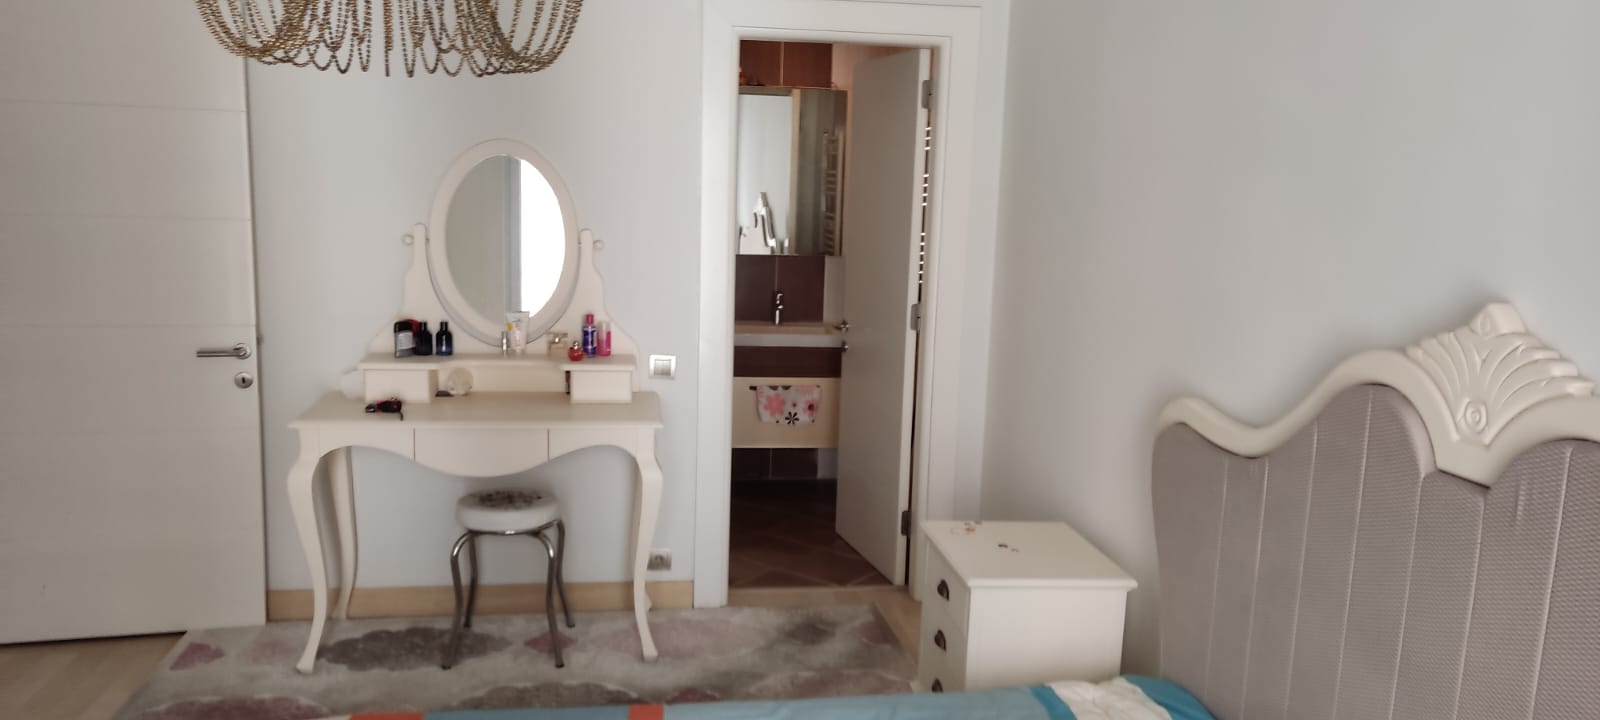 2 Bedroom Apartment in Esenyurt | Rayana 1